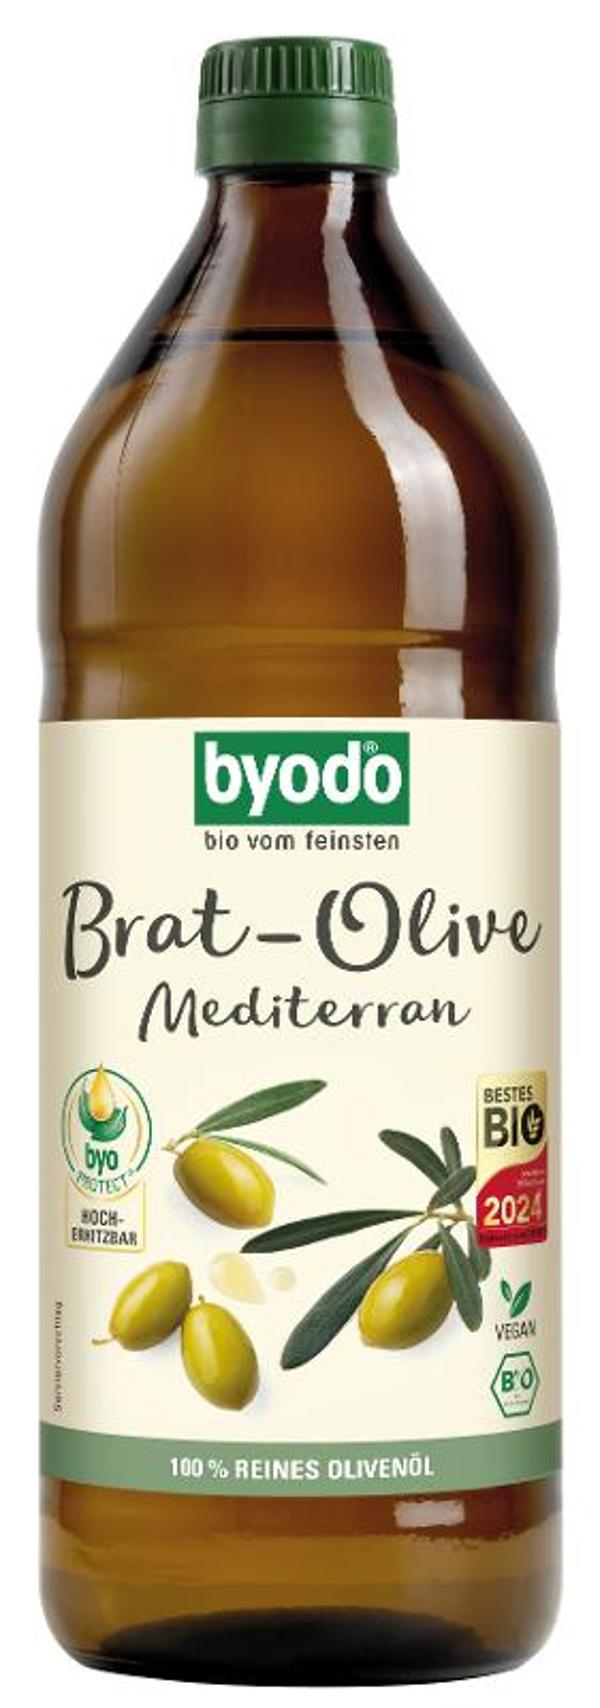 Produktfoto zu Bratöl olive mediterran, 0,75 l